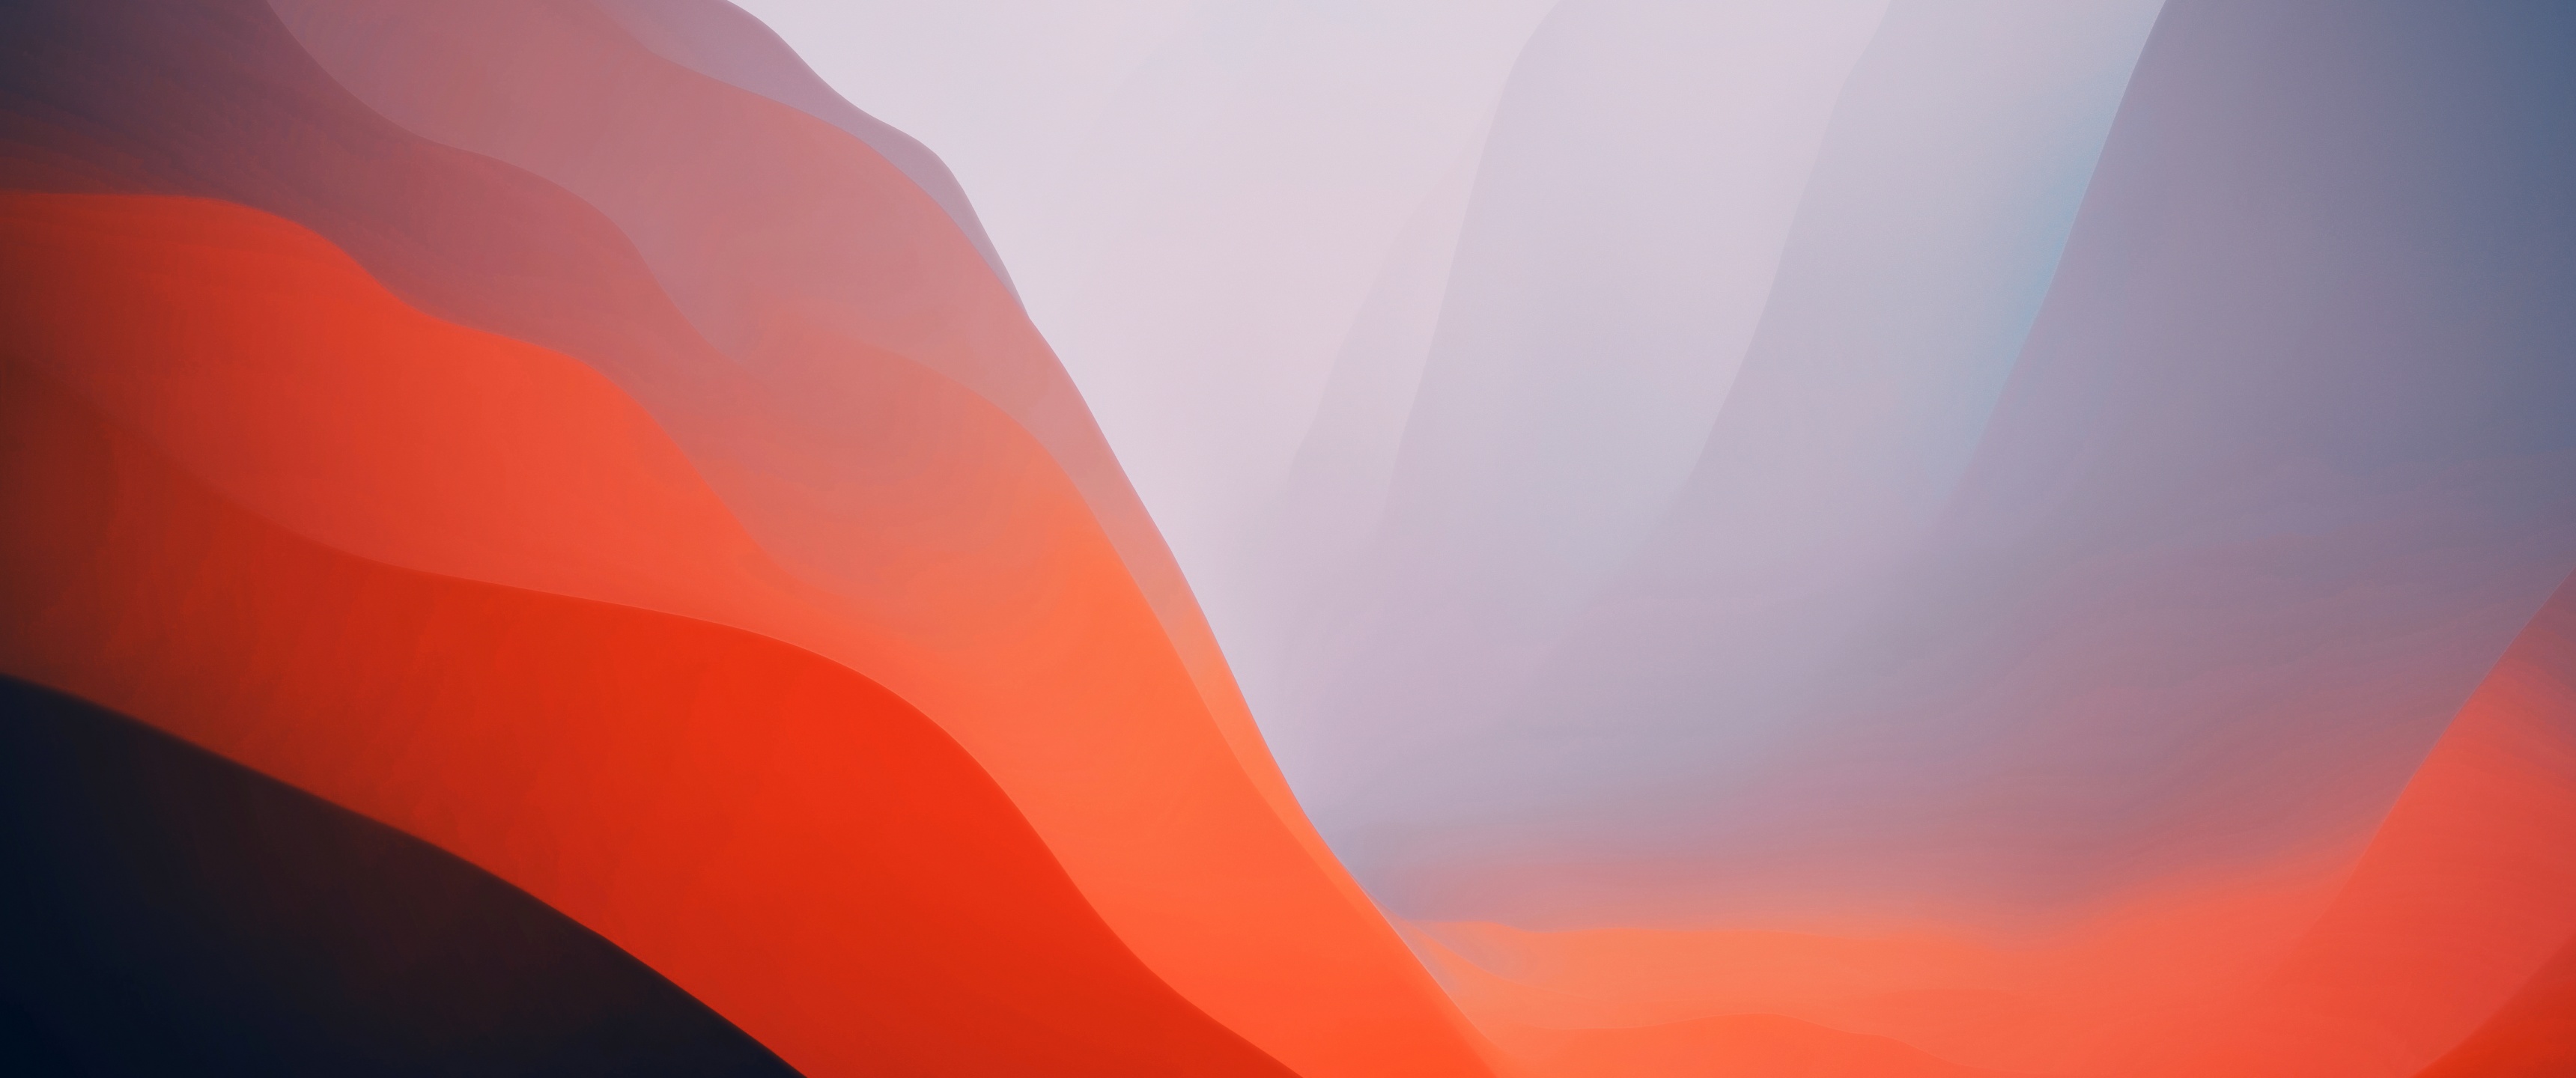 macOS Monterey Wallpaper 4K, Stock, Orange, Light, Gradients, #5894